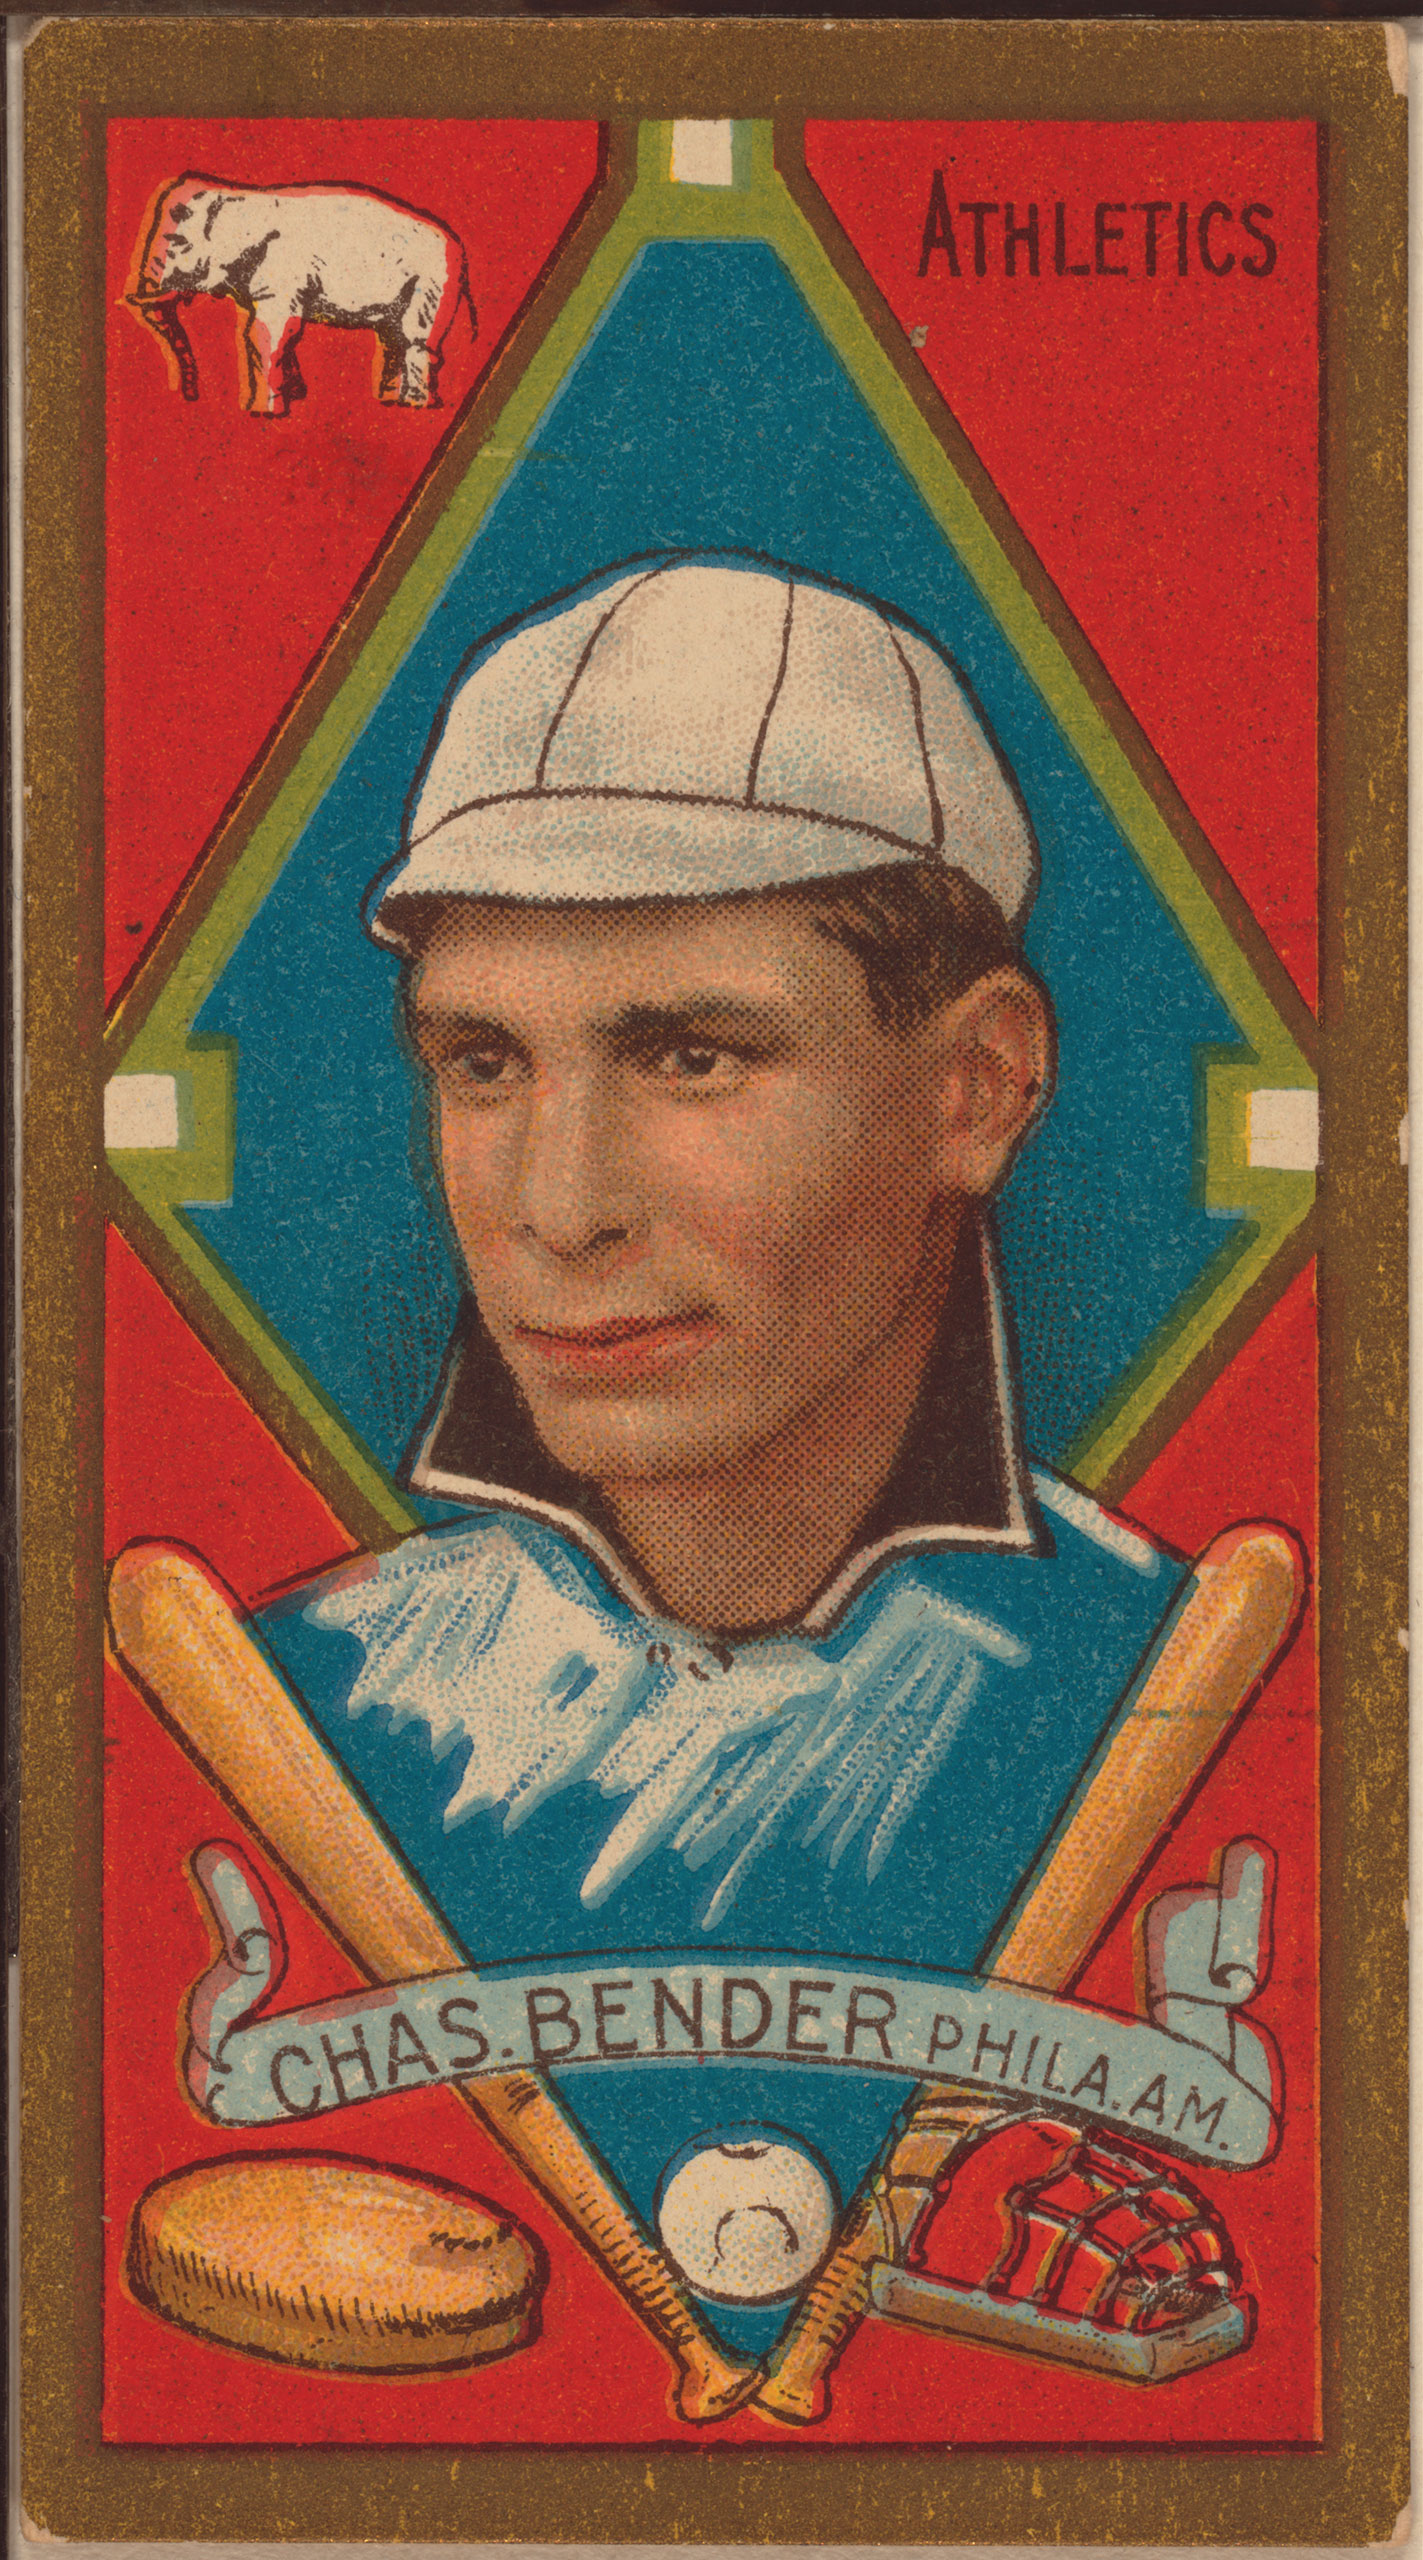 Chas. Bender, Philadelphia Athletics, baseball card, 1911.